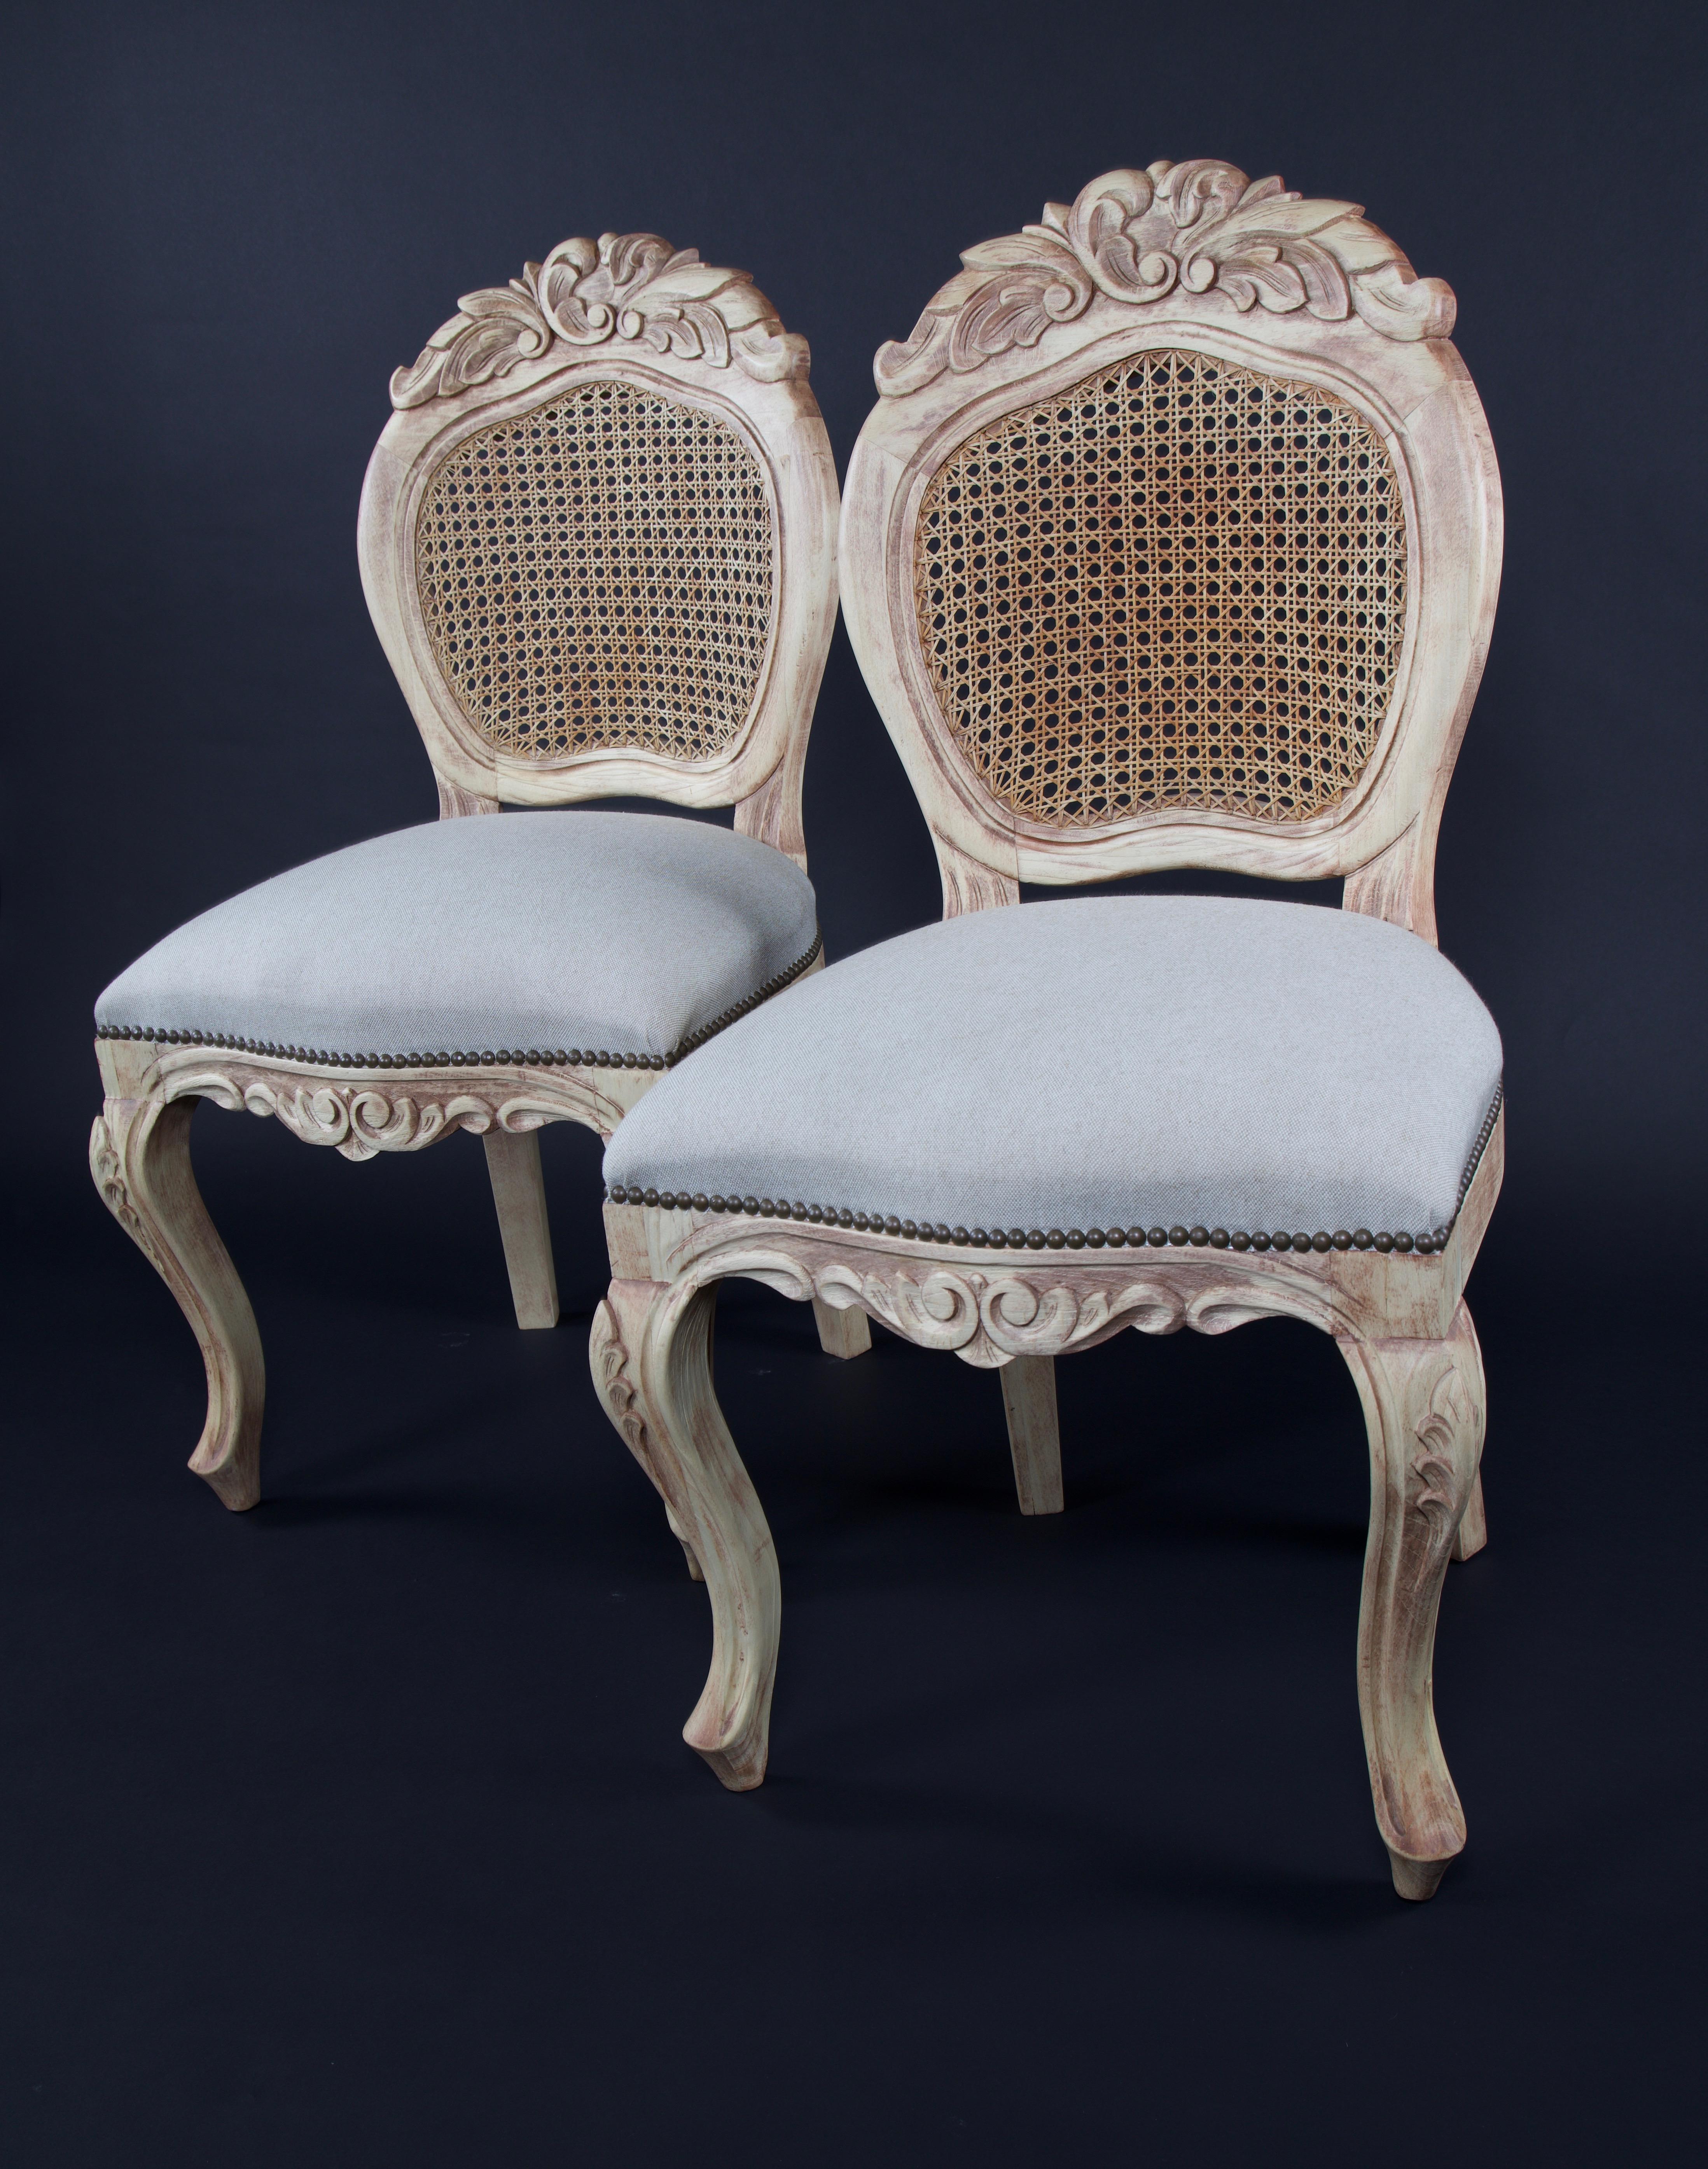 Ein Paar runde Beistellstühle im Stil von Louis XV mit Kabriole Beine mit geschnitzten Akanthusblättern geköpft, eine runde caned zurück mit Wappen, die mit mehreren geschnitzten Akanthusblättern mit Perlen und eine Schürze, die ein Paar Spiegel